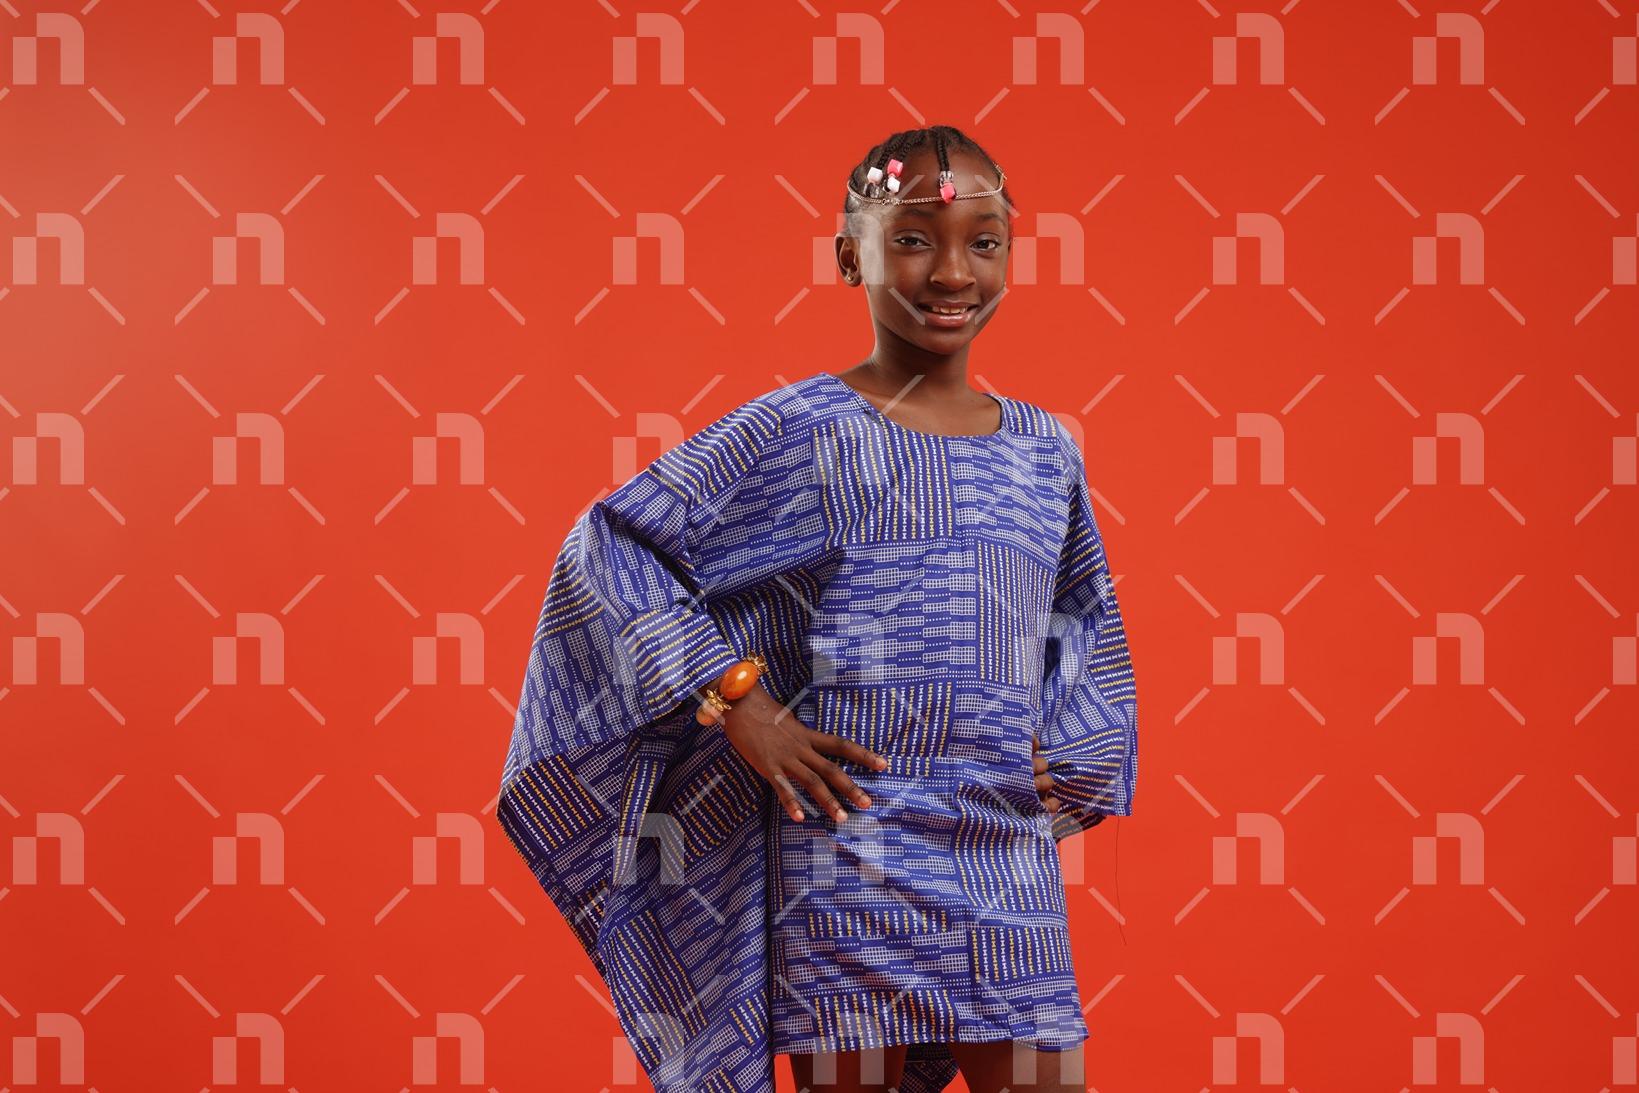 fillette-africaine-moderne-vetue-dune-robe-de-couleur-bleu-posant-legerement-de-profil-avec-les-deux-mains-a-la-hanche-et-un-grand-sourire-pour-une-photo-studio